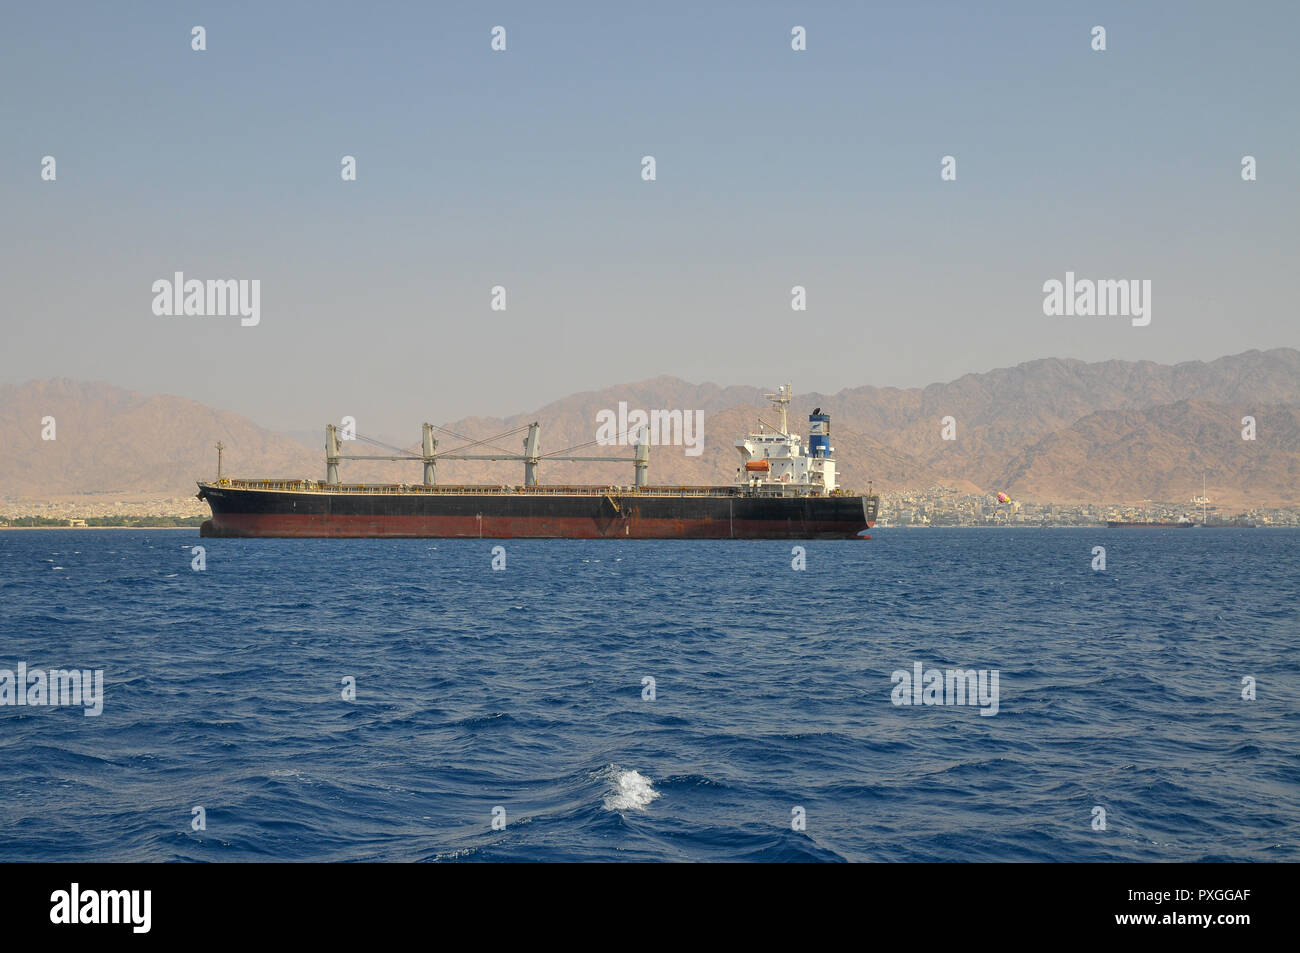 Puerto de embarque israeli fotografías e imágenes de alta resolución -  Página 2 - Alamy